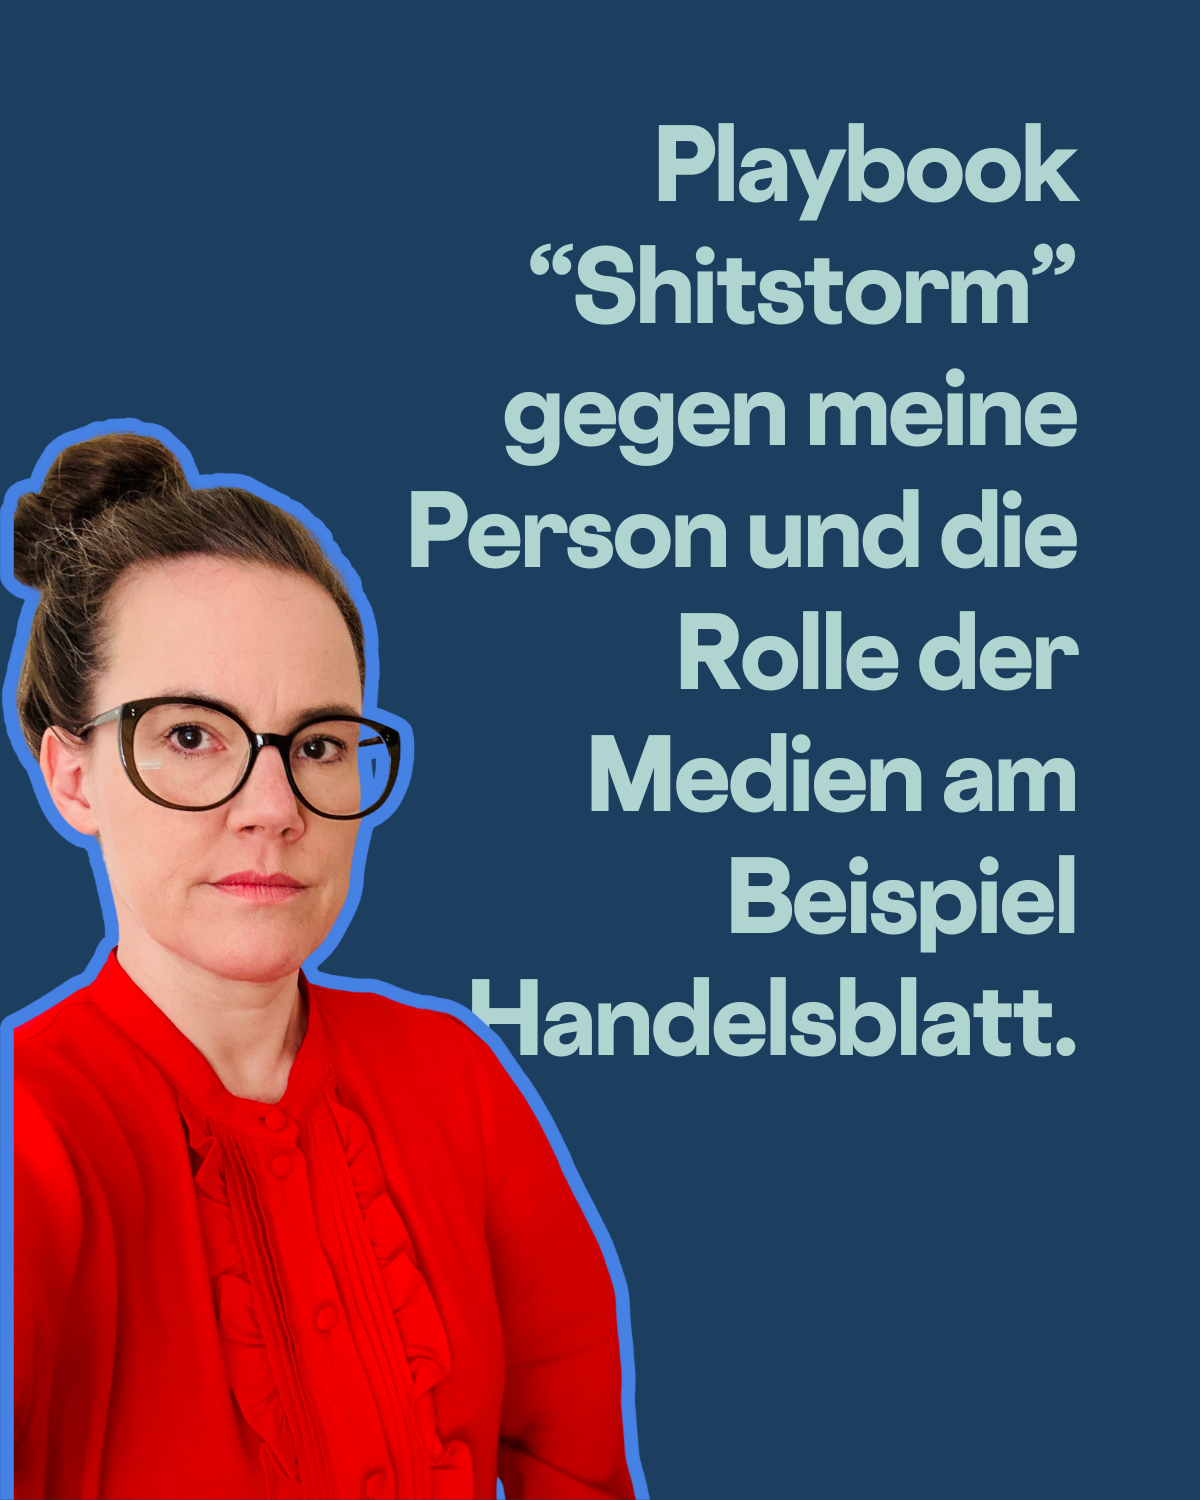 Text: Playbook “Shitstorm” gegen meine Person und die Rolle der Medien am Beispiel Handelsblatt. Ich schaue mit ernstem Gesicht in die Kamera und trage eine rote Bluse.